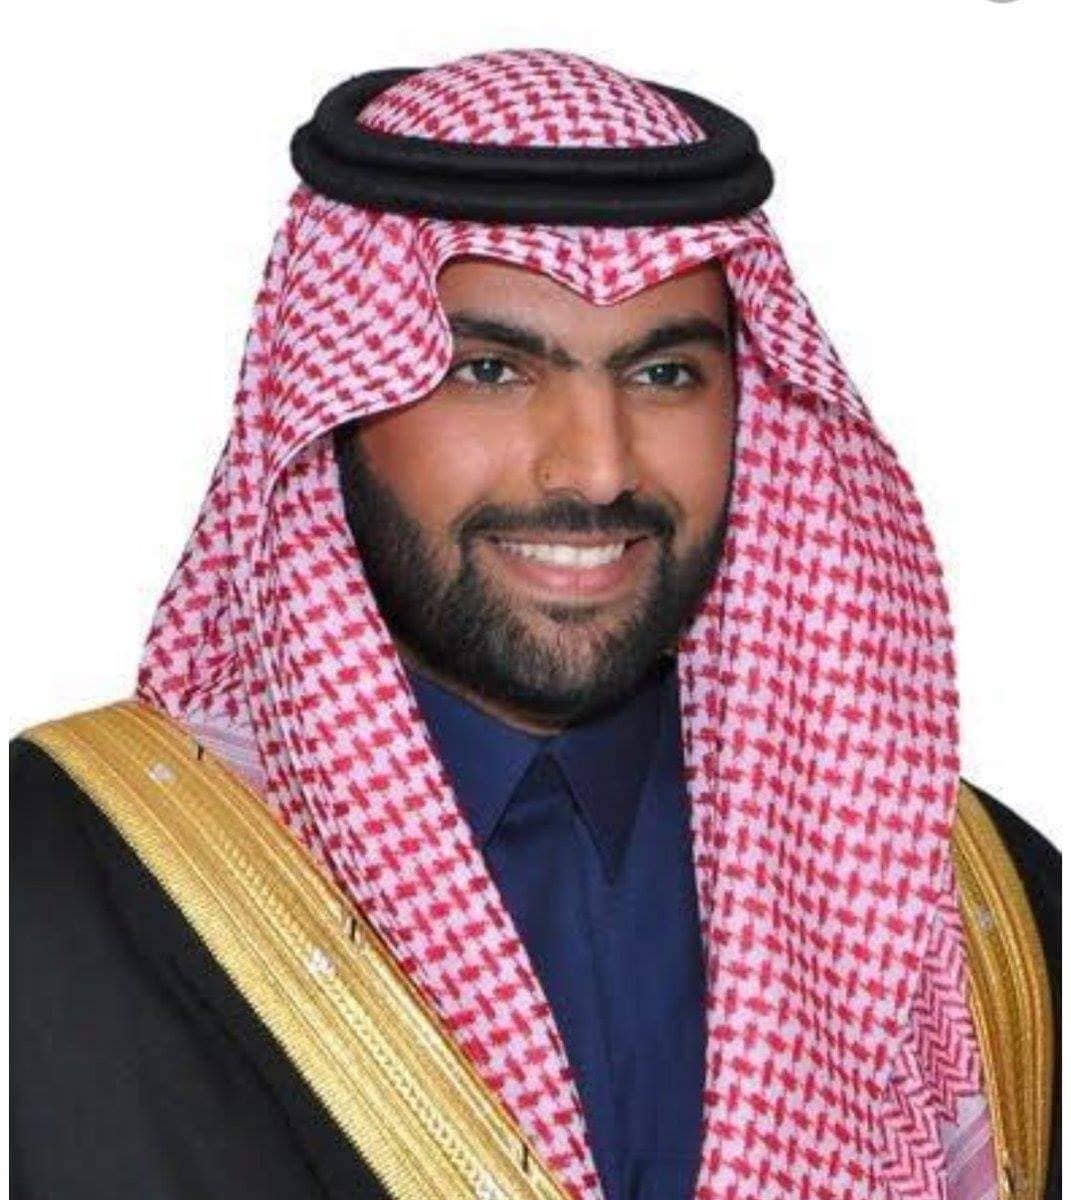  الأمير بدر بن عبدالله بن فرحان ال سعود